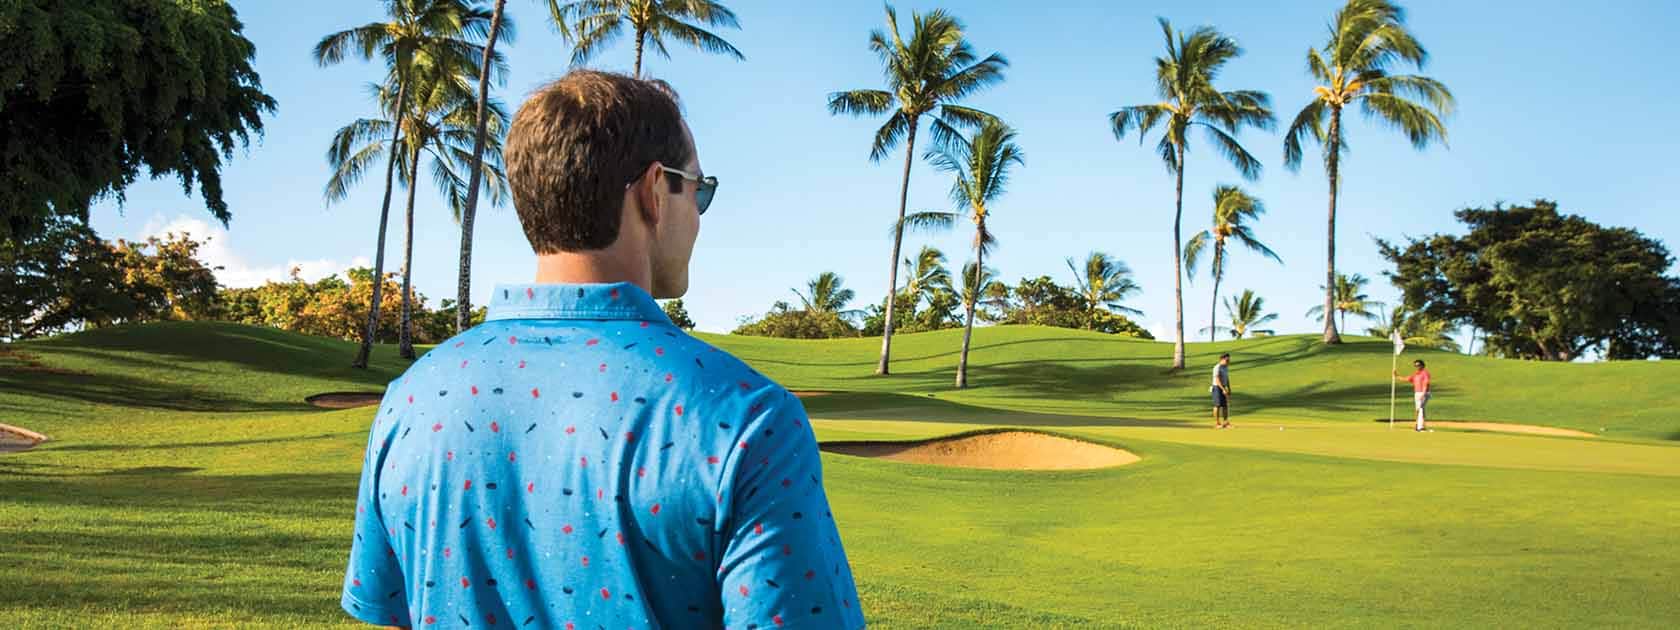 homme portant une chemise bleue texturée debout dans un parcours de golf avec palmiers observant les autres golfeurs